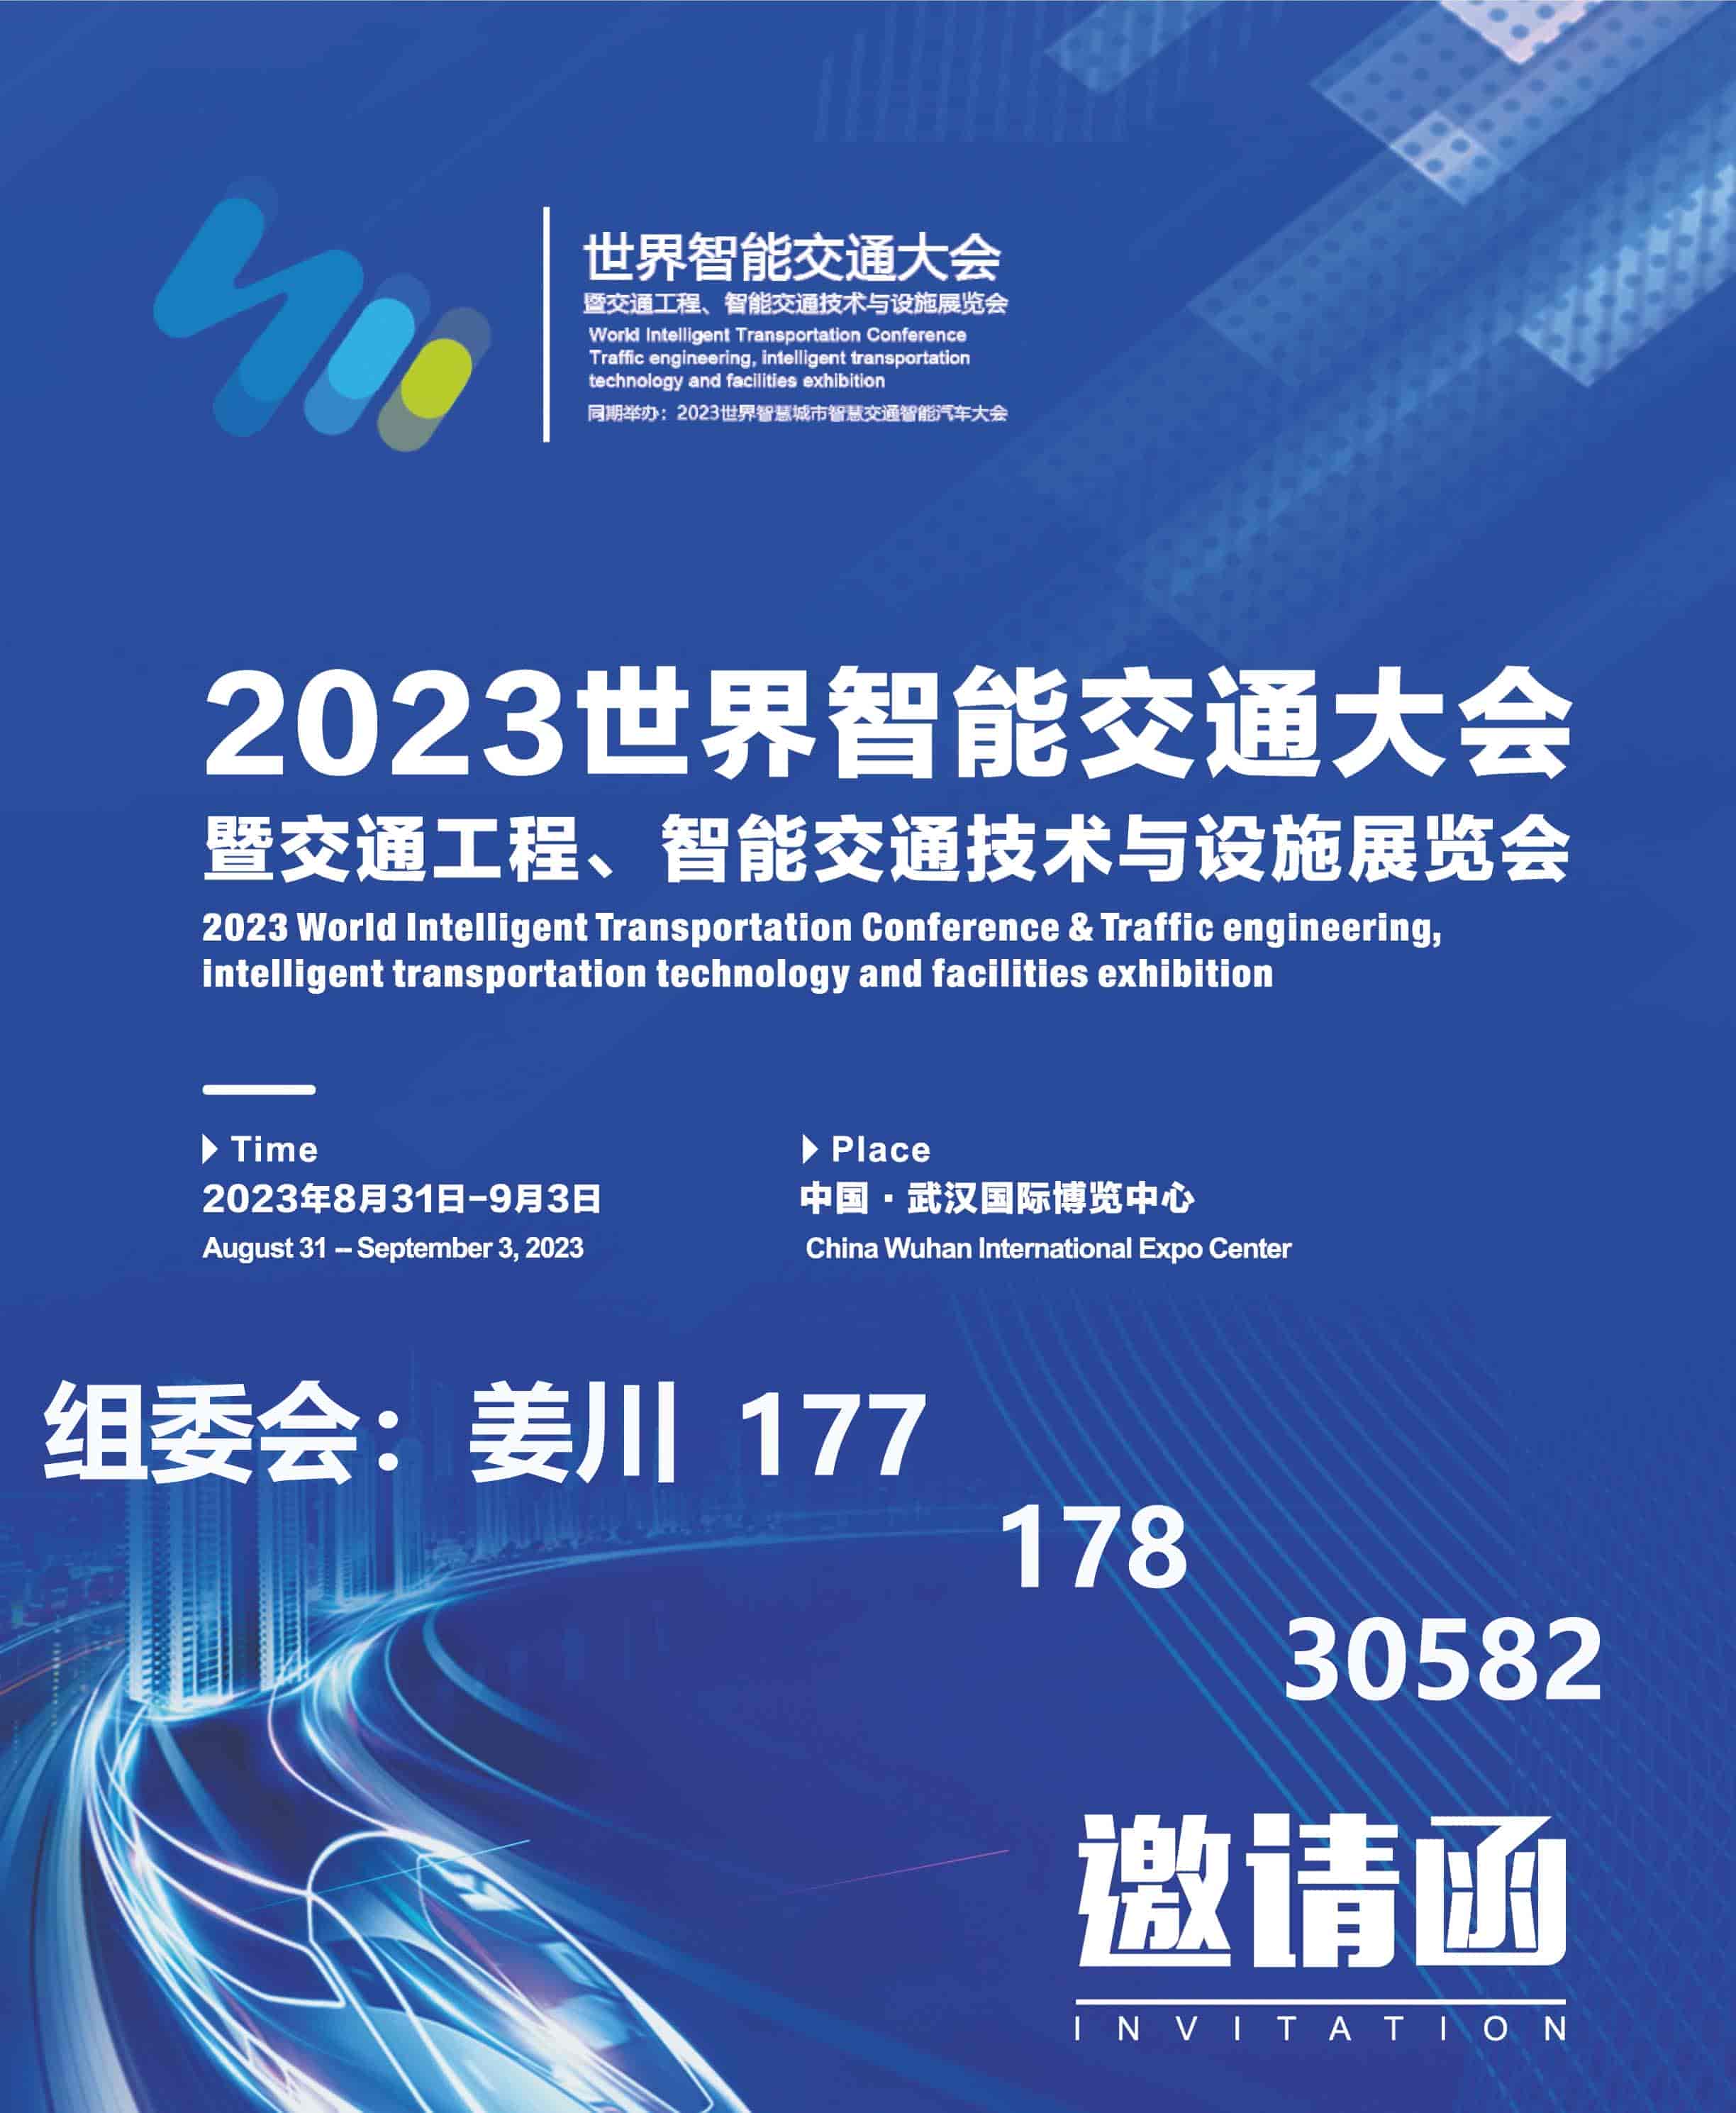 2023世界智能交通大会暨交通工程、智能交通技术与设施展览会(1)-1.jpg